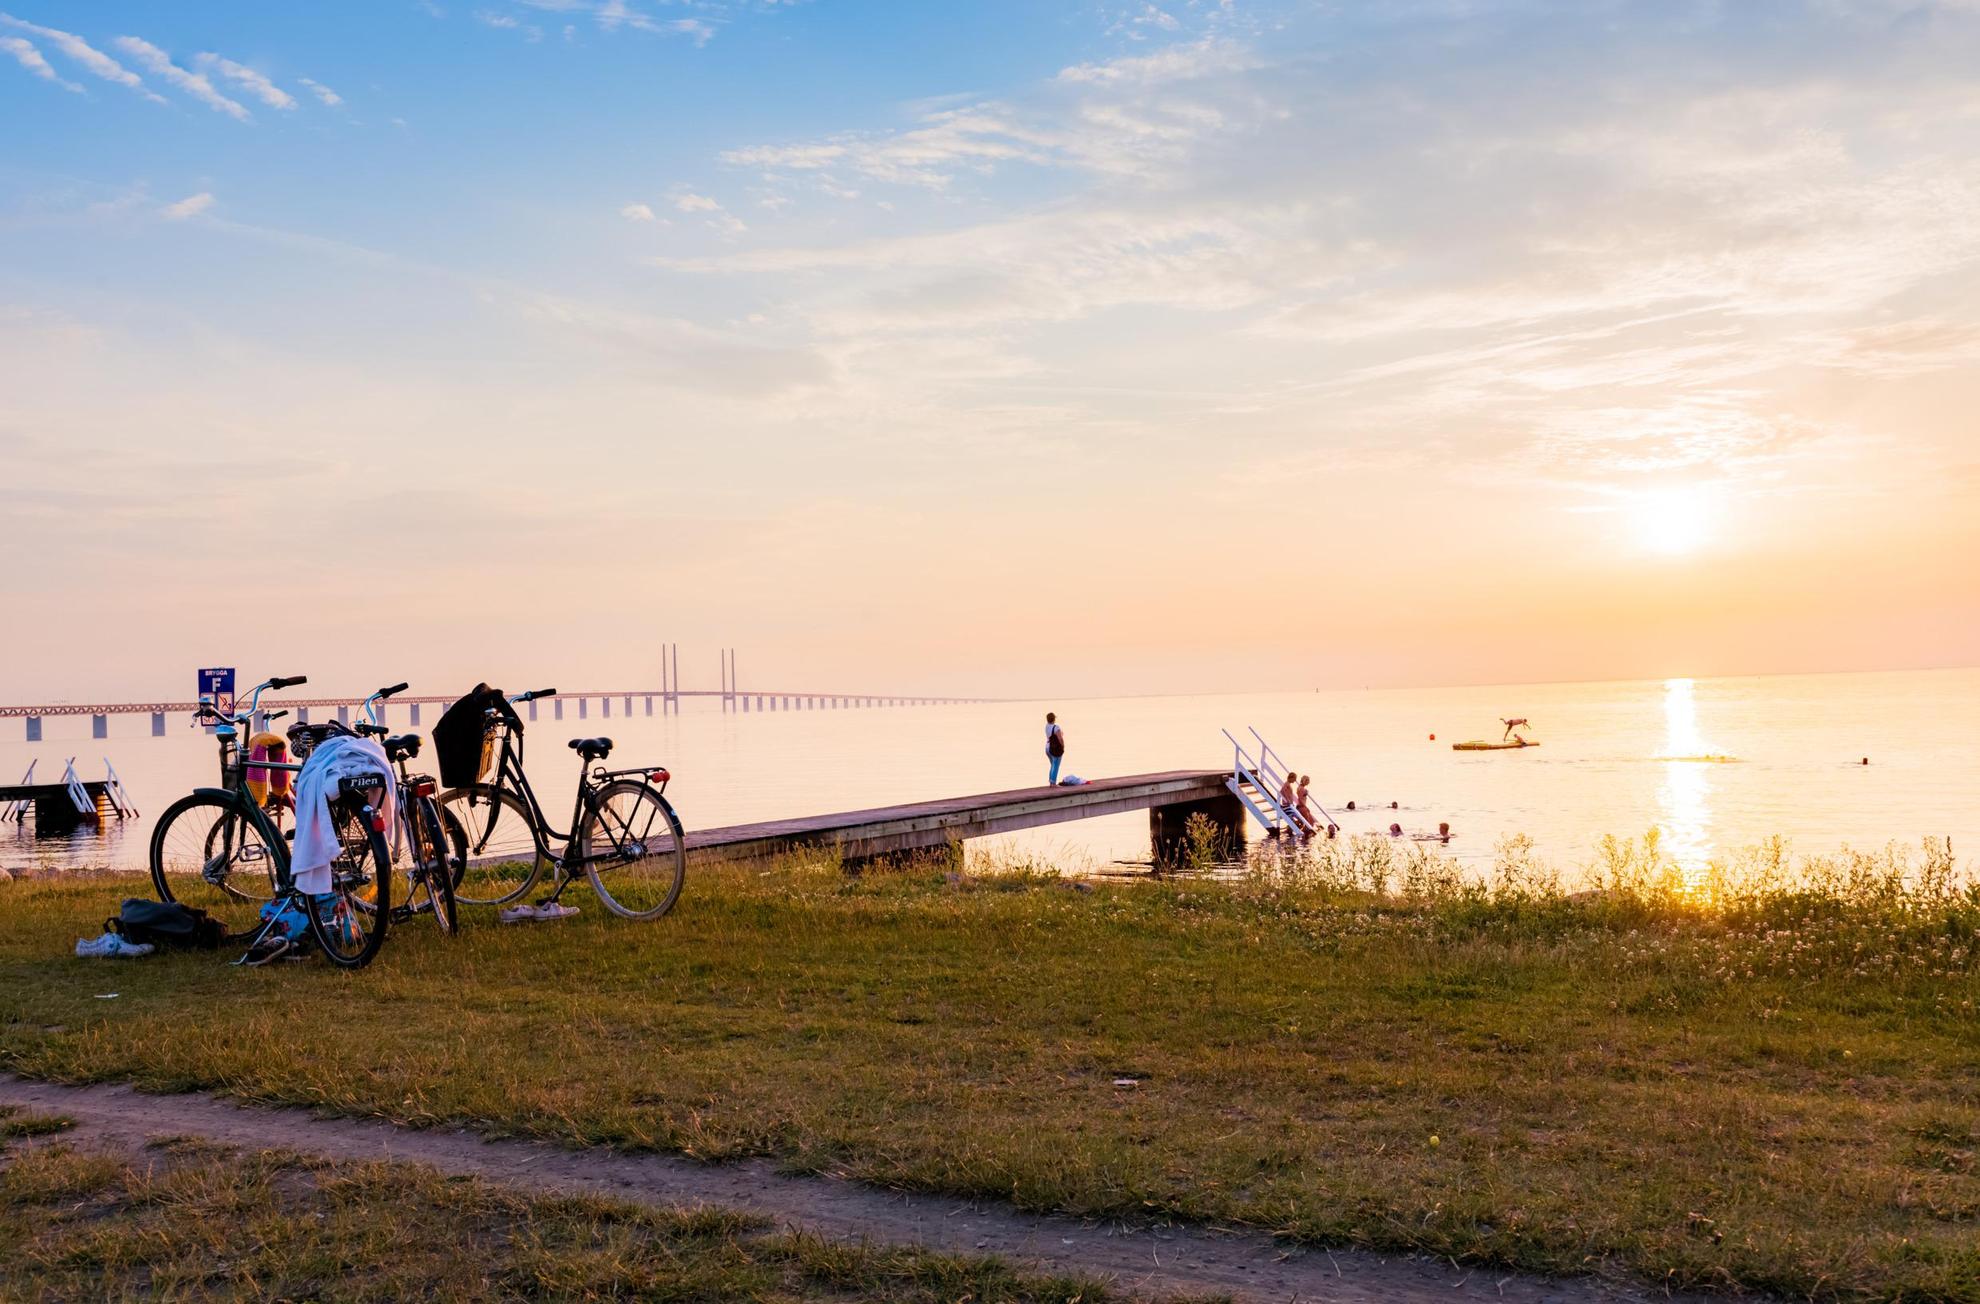 Coucher de soleil sur une plage avec une jetée. Deux vélos sont garés sur l'herbe au-dessus de la plage et plusieurs personnes se baignent dans la mer. Le pont de l'Öresund en arrière-plan.